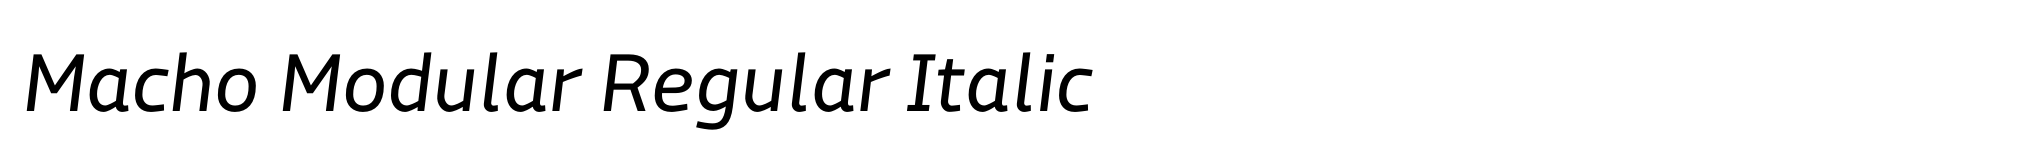 Macho Modular Regular Italic image